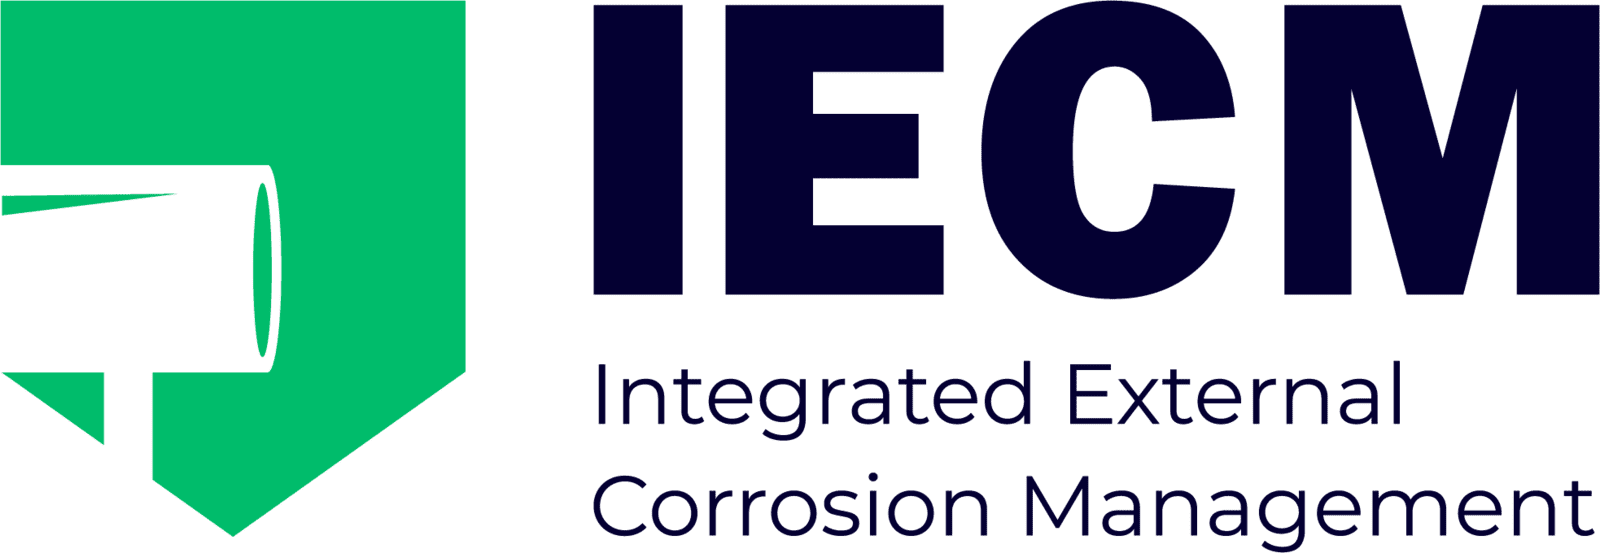 IECM Organization